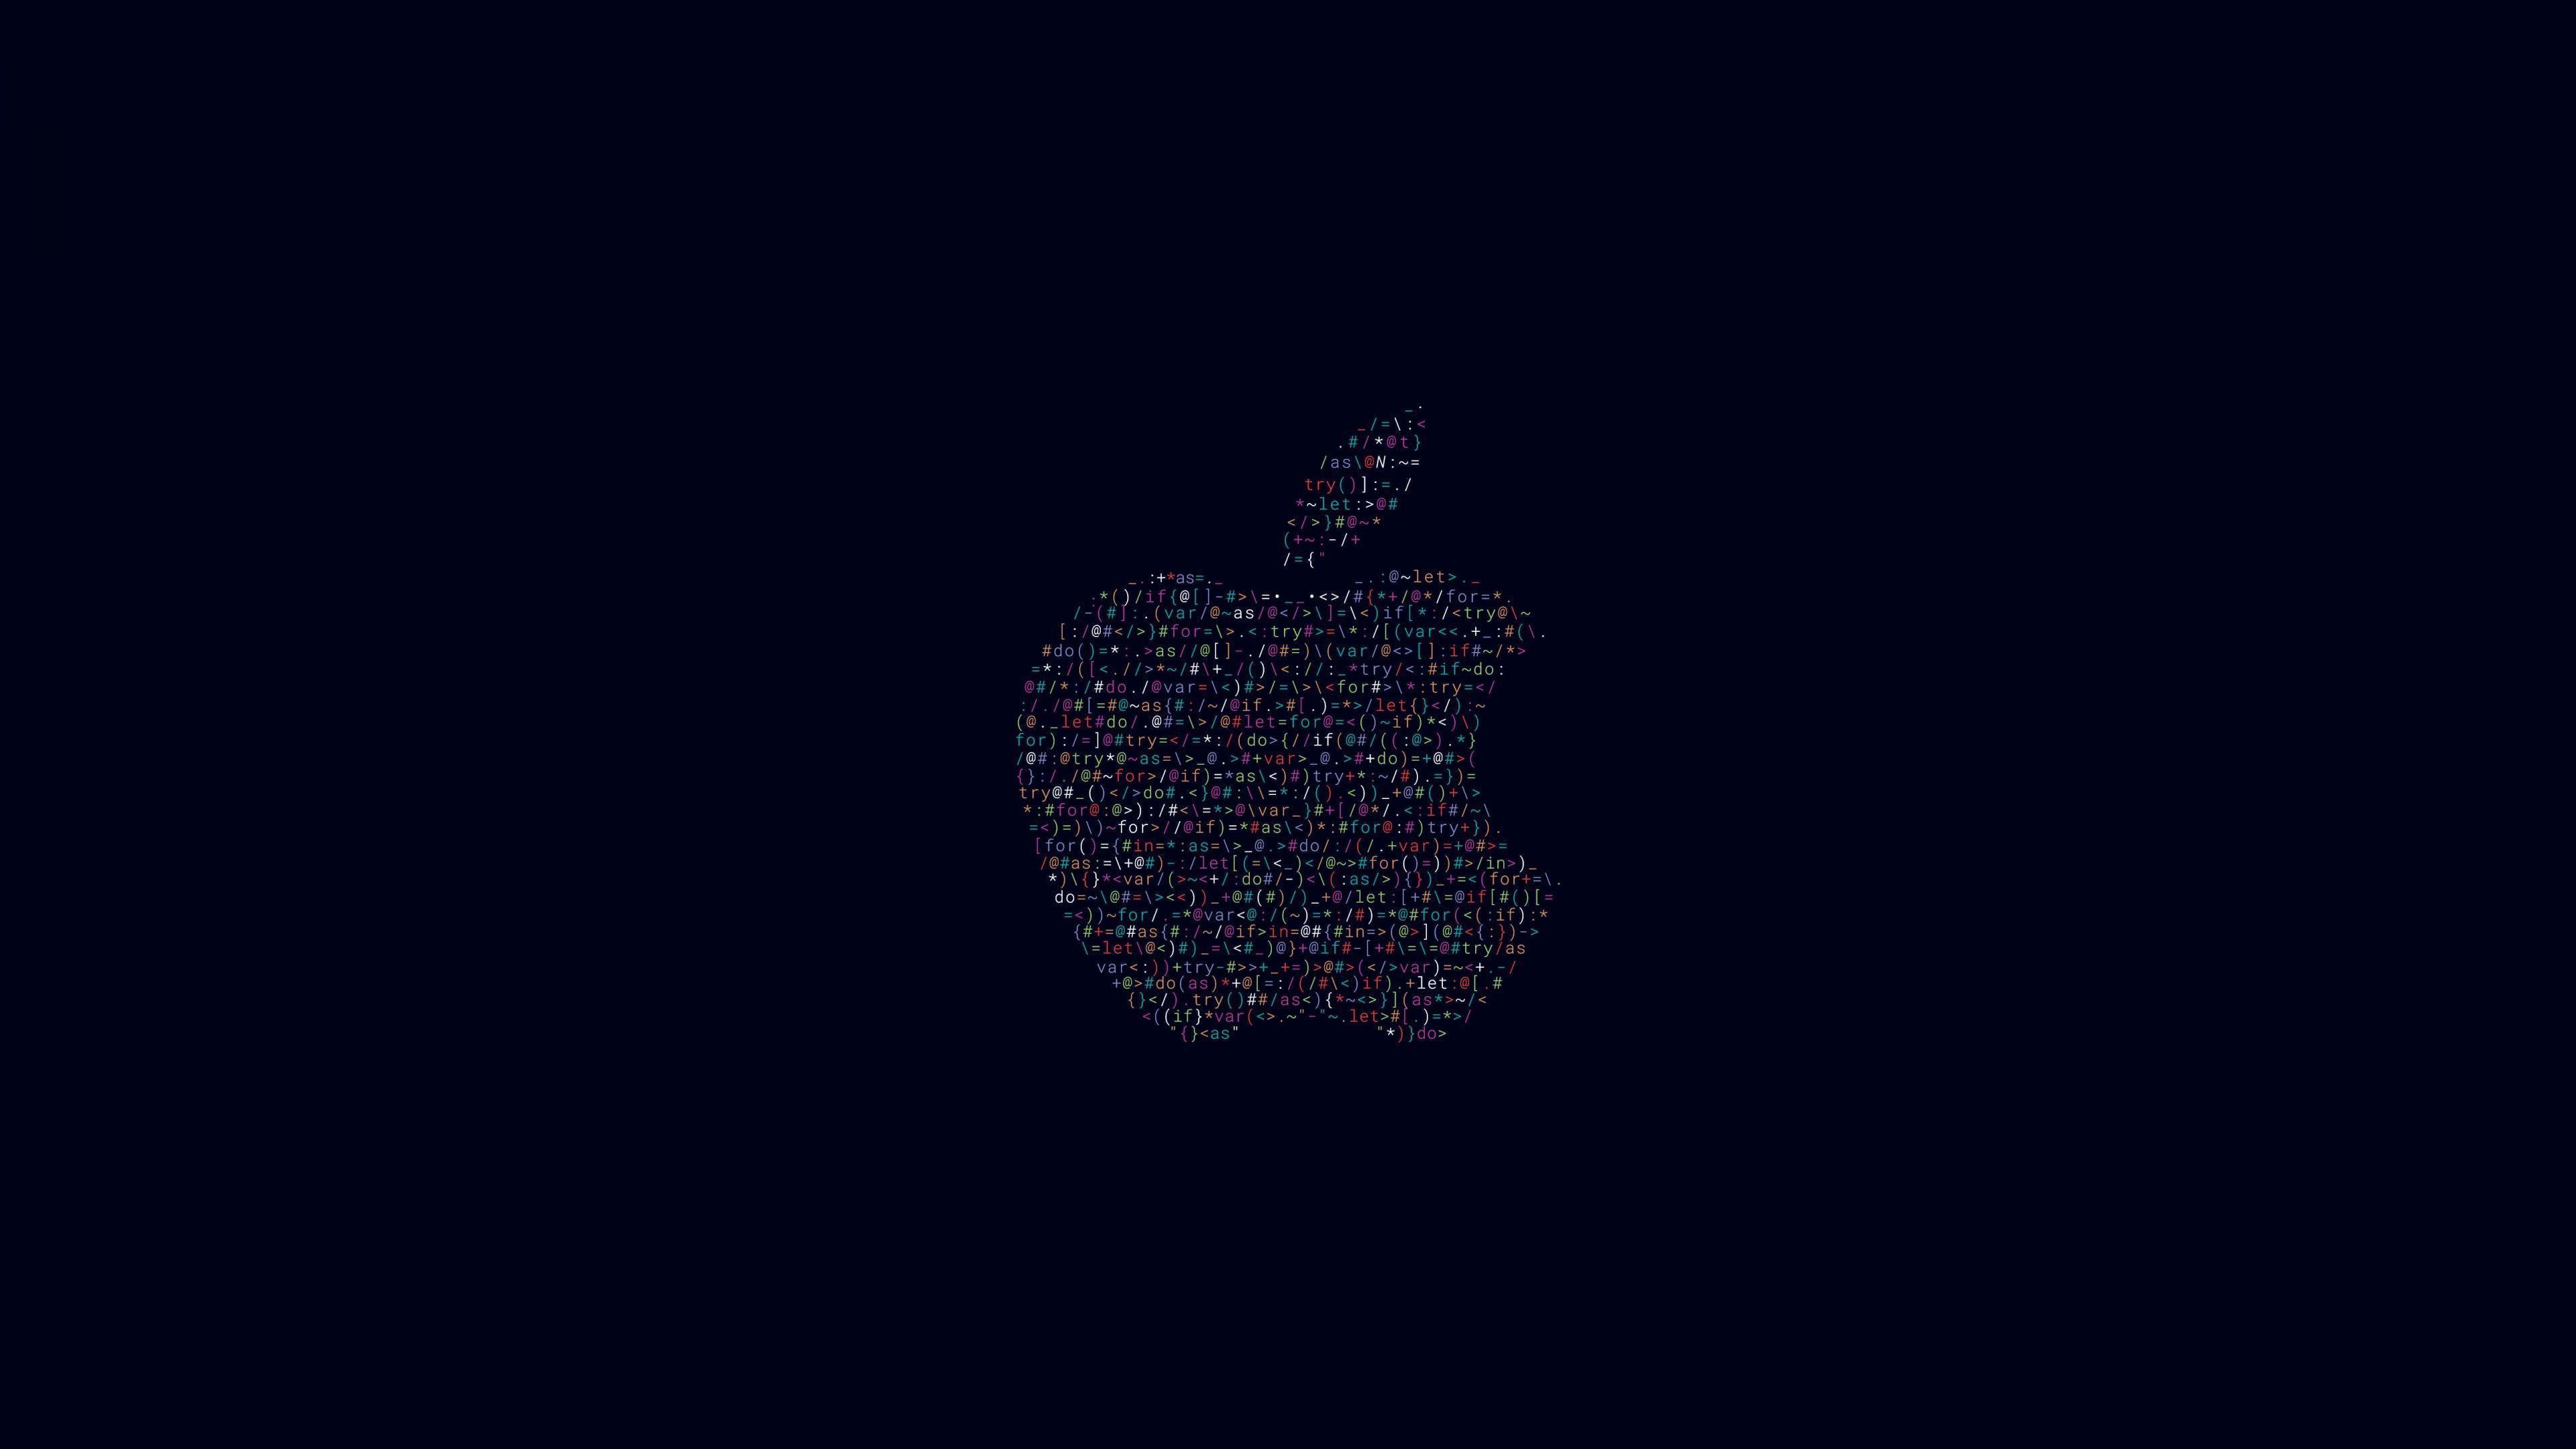 3840x2160 # Nền đen, # Đen, # Mã, # Màu đen, # Logo của Apple